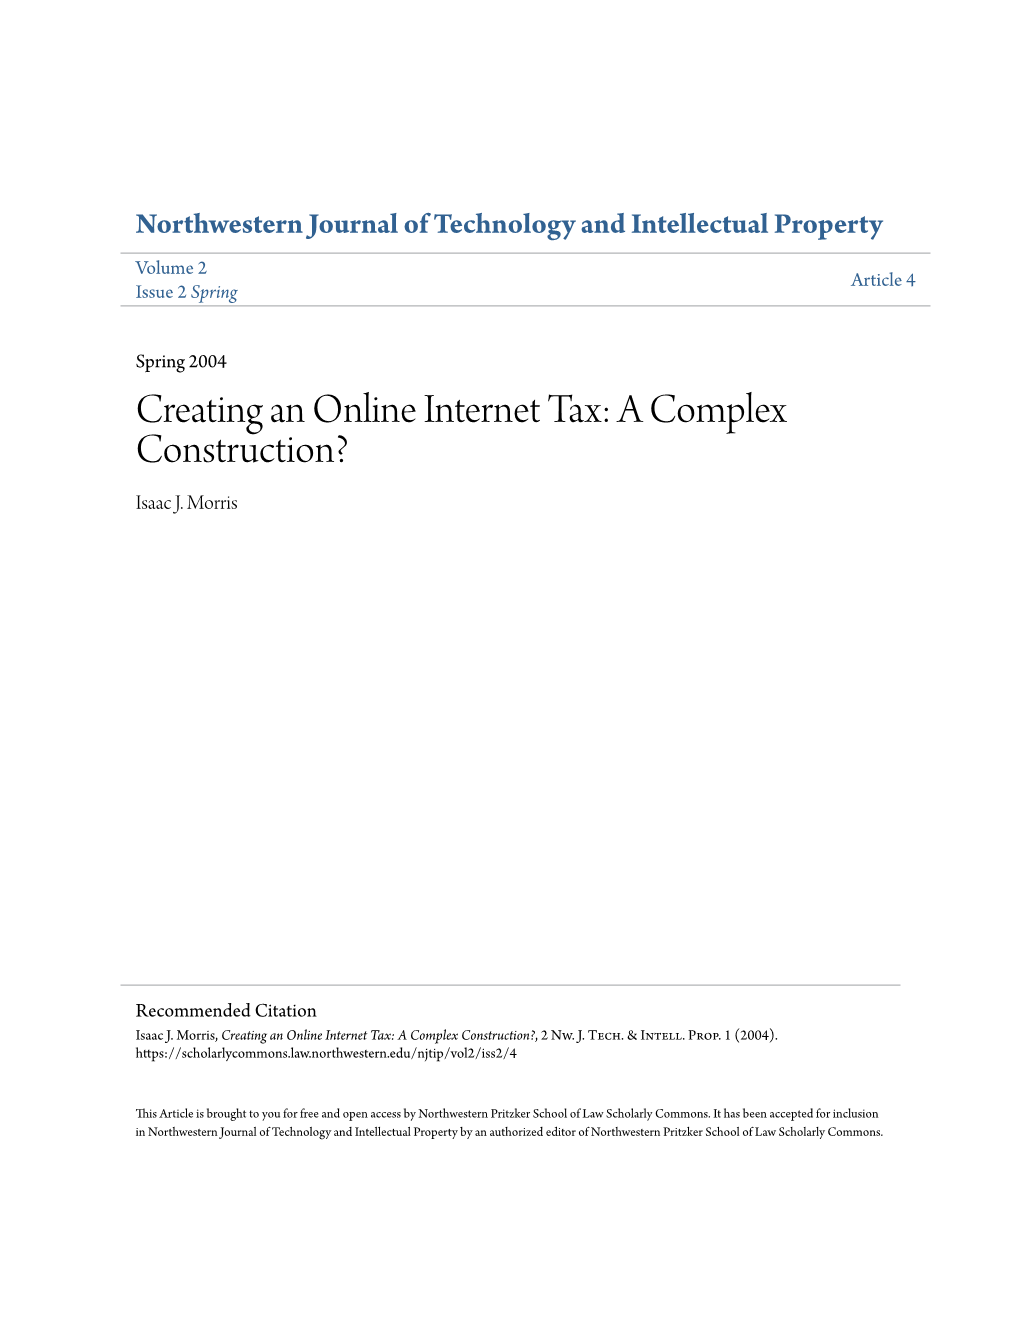 Creating an Online Internet Tax: a Complex Construction? Isaac J